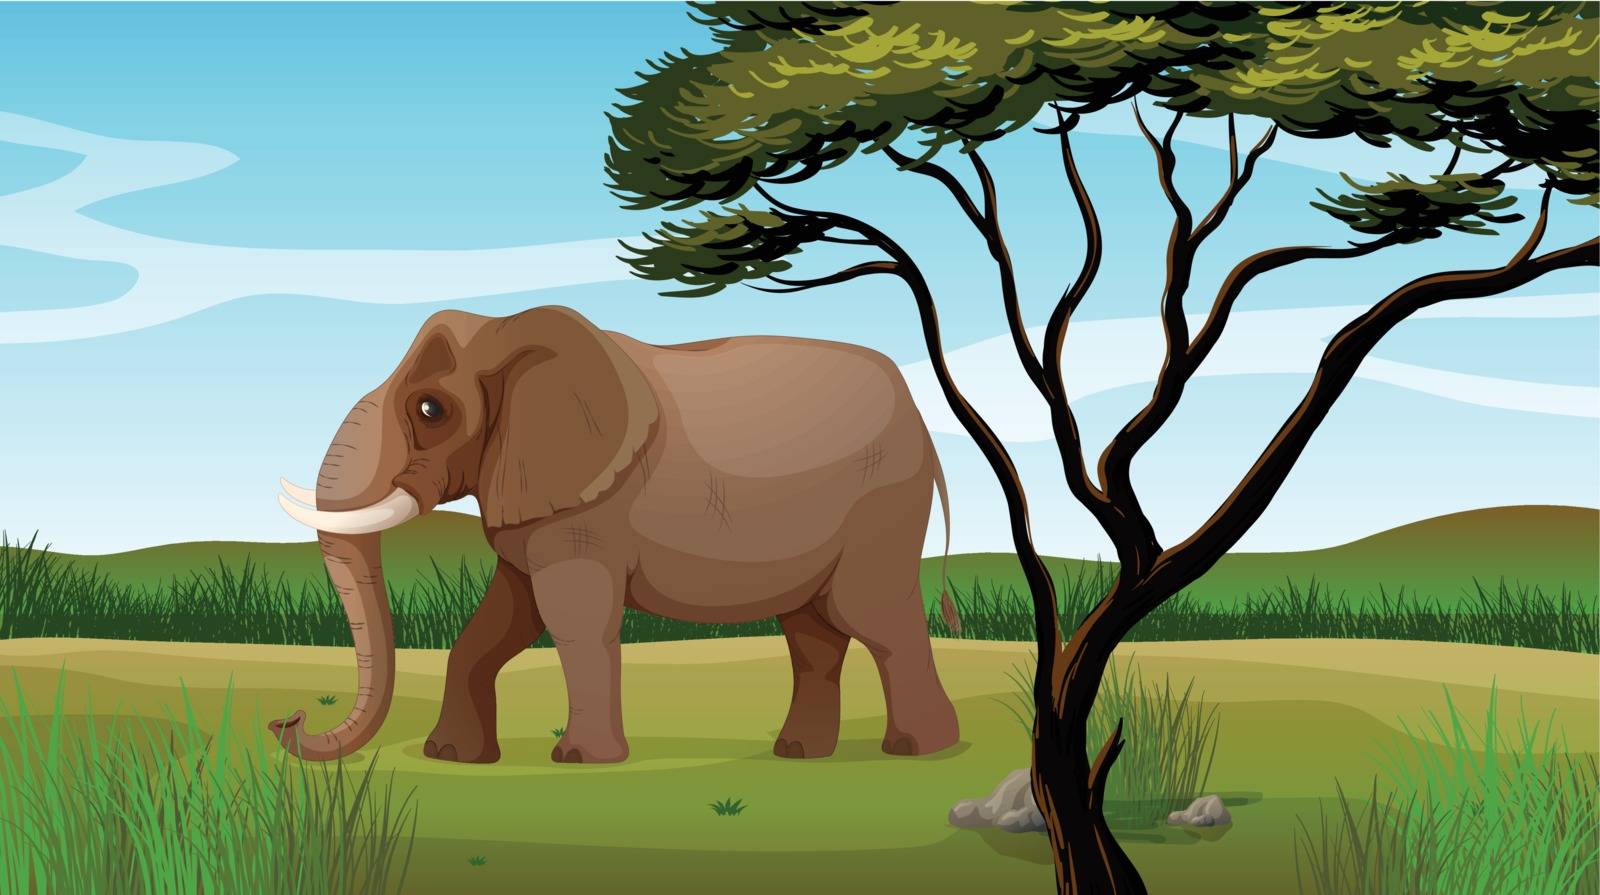 Illustration of a huge elephant